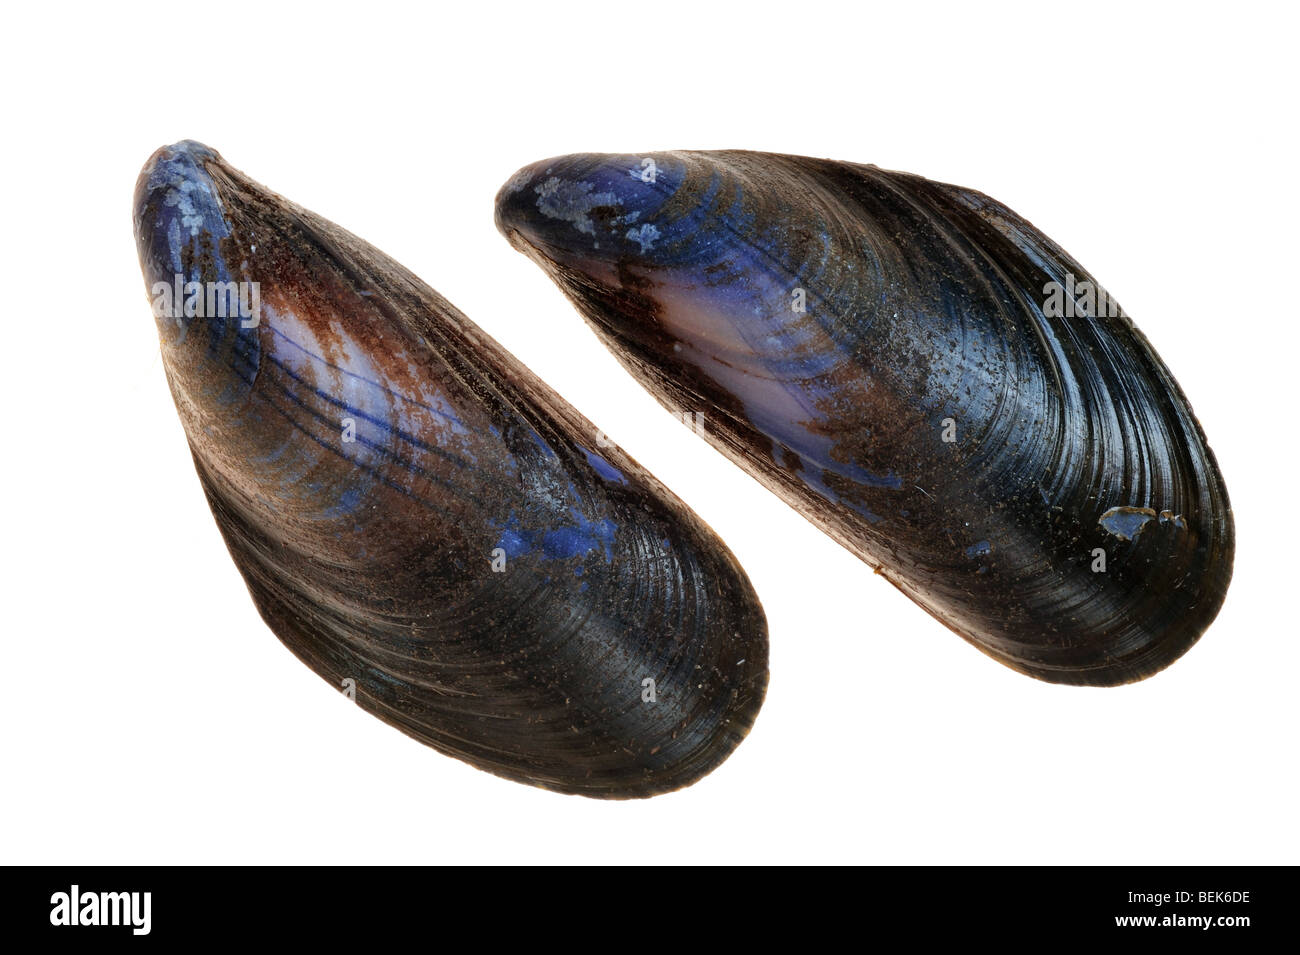 Common mussel shells (Mytilus edulis), Belgium Stock Photo